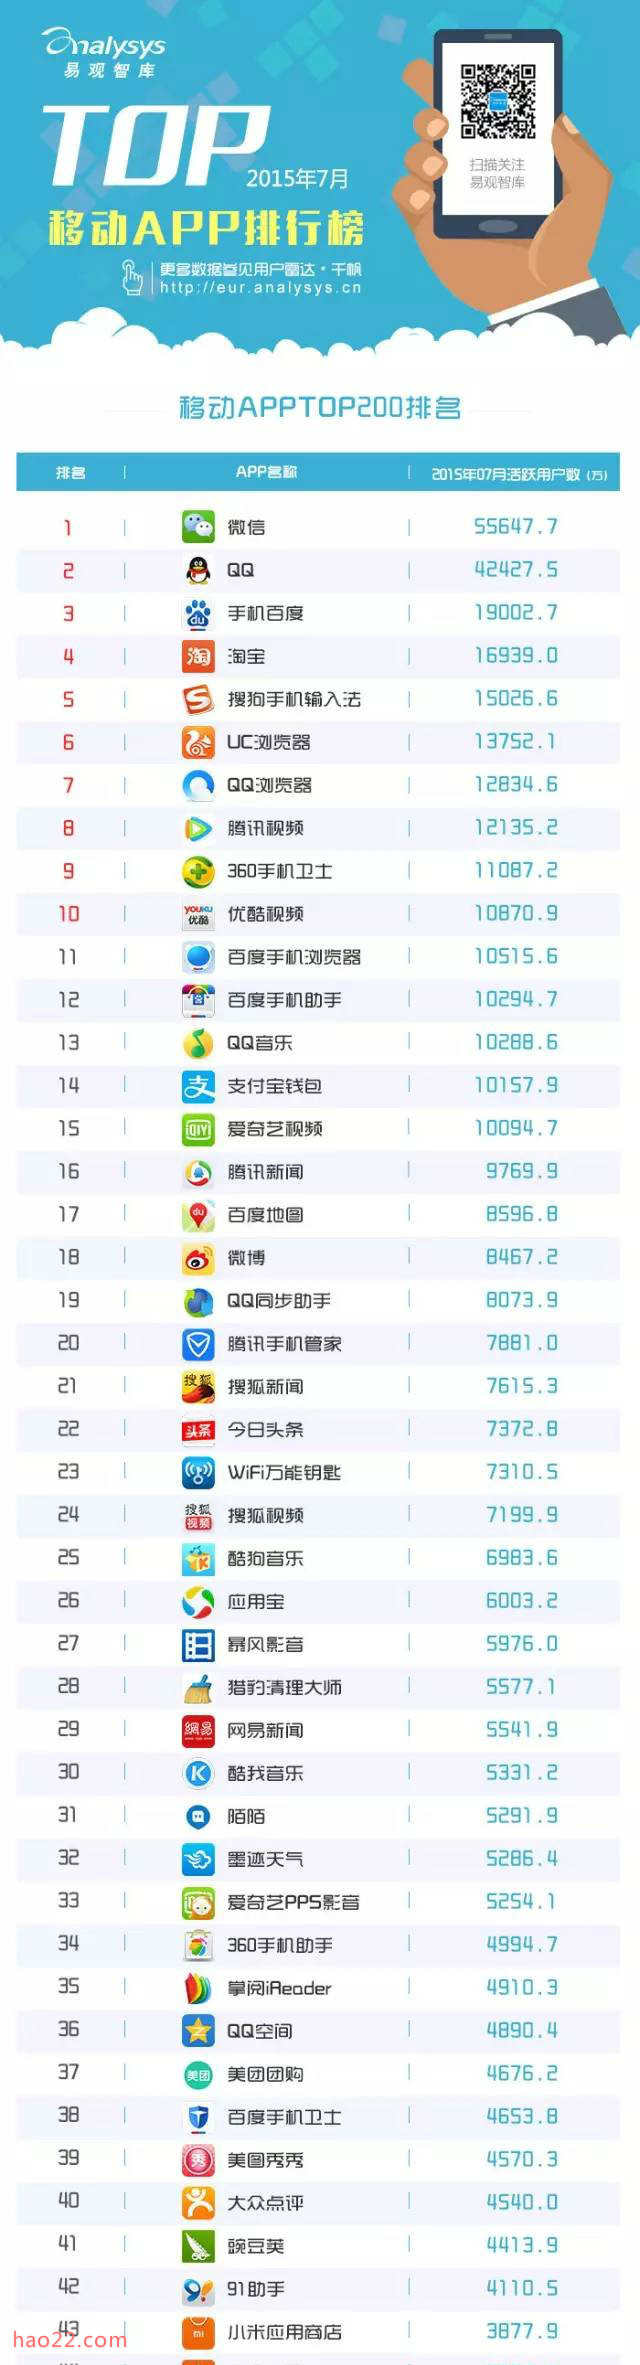 2015年7月中国移动应用排名 